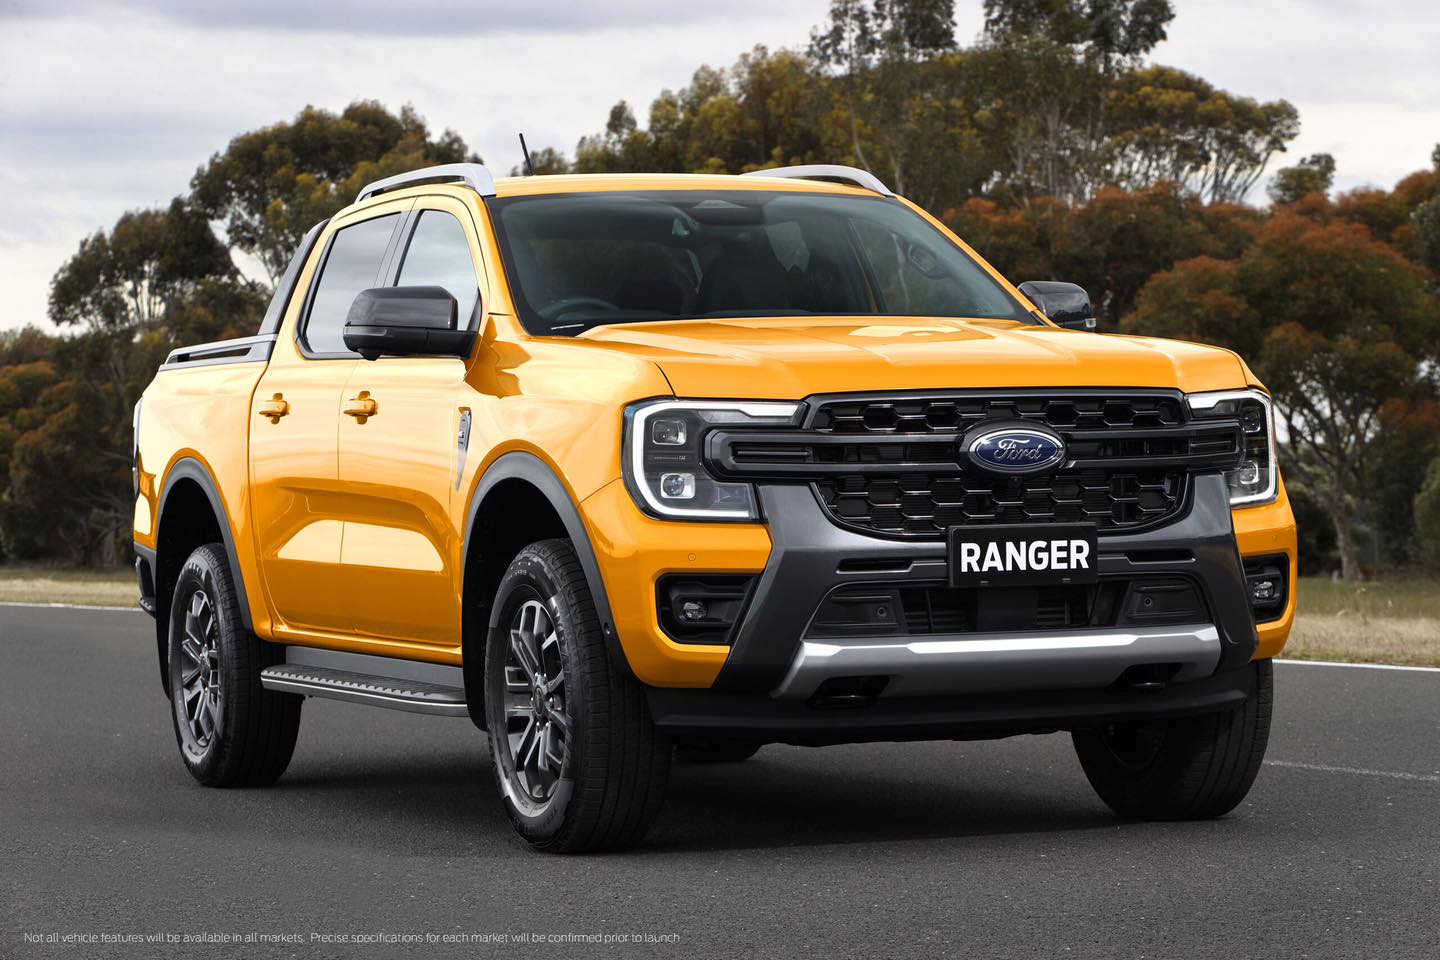 大改款Ford Ranger將上市 預售價135萬元起